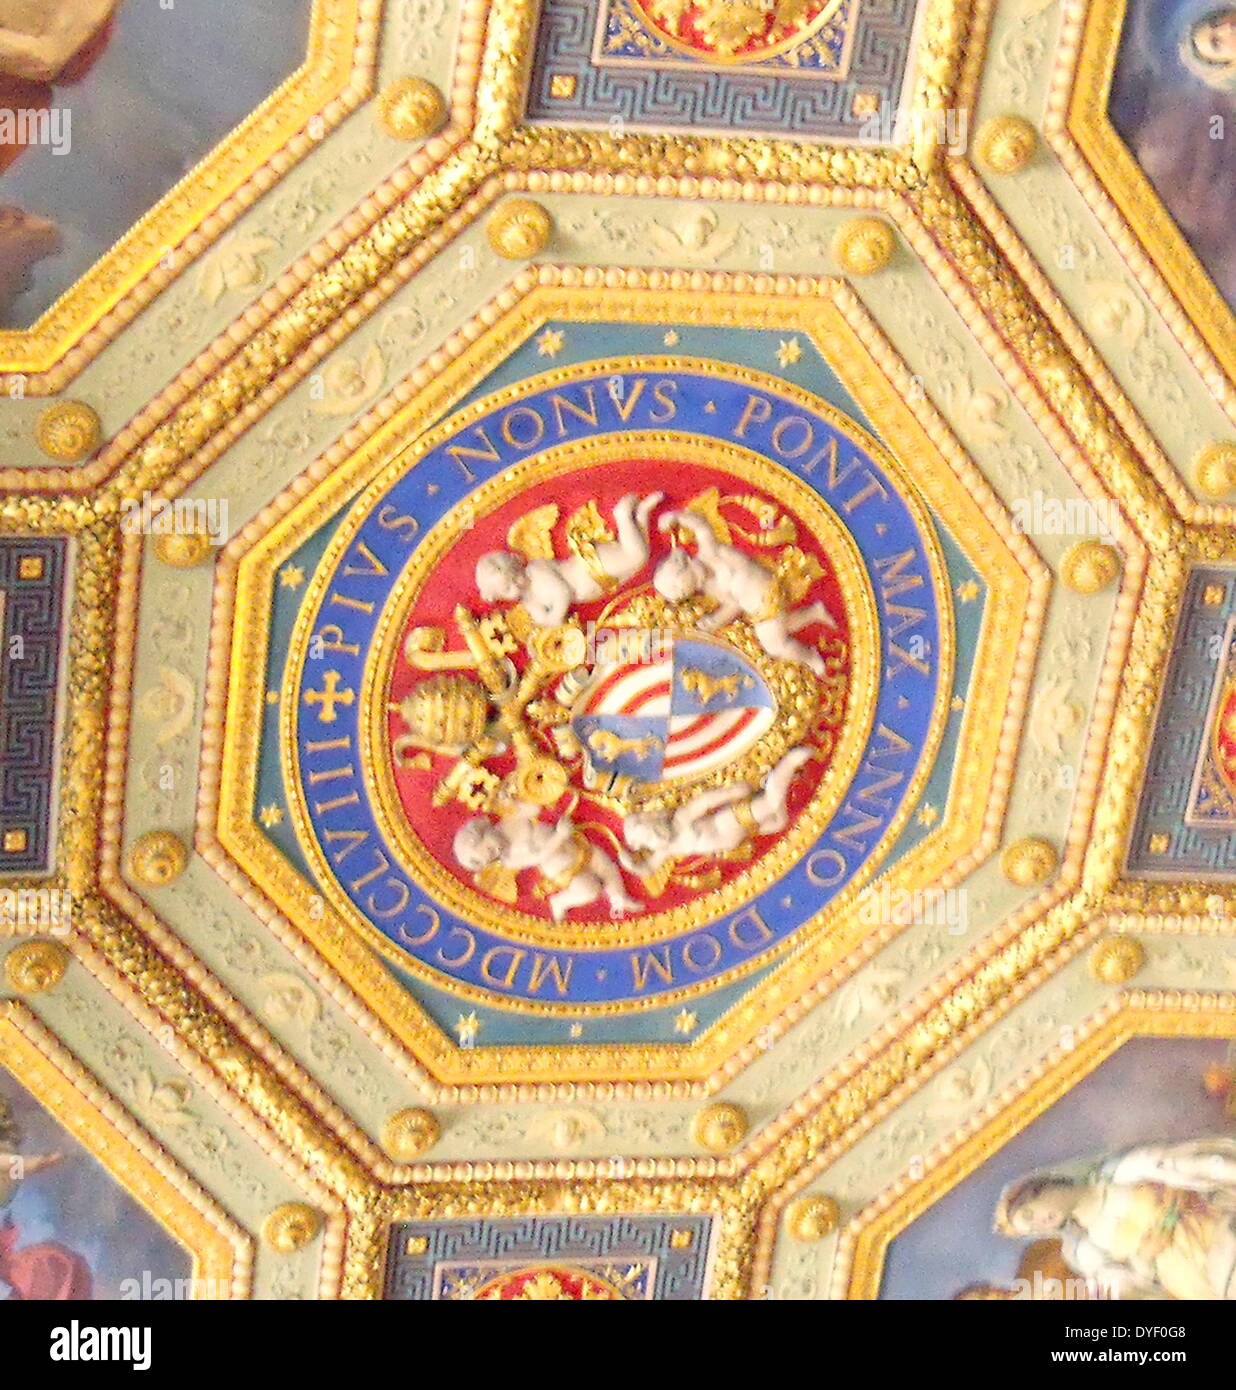 Die Vatikanischen Museen, eine riesige Sammlung der klassischen Detail, Renaissance Meisterwerke etc., die im frühen 16. Jahrhundert von Papst Julius II. gegründet werden Sie als, einige der größten Museen der Welt. Das Bild zeigt die Hilfsaktionen. Stockfoto